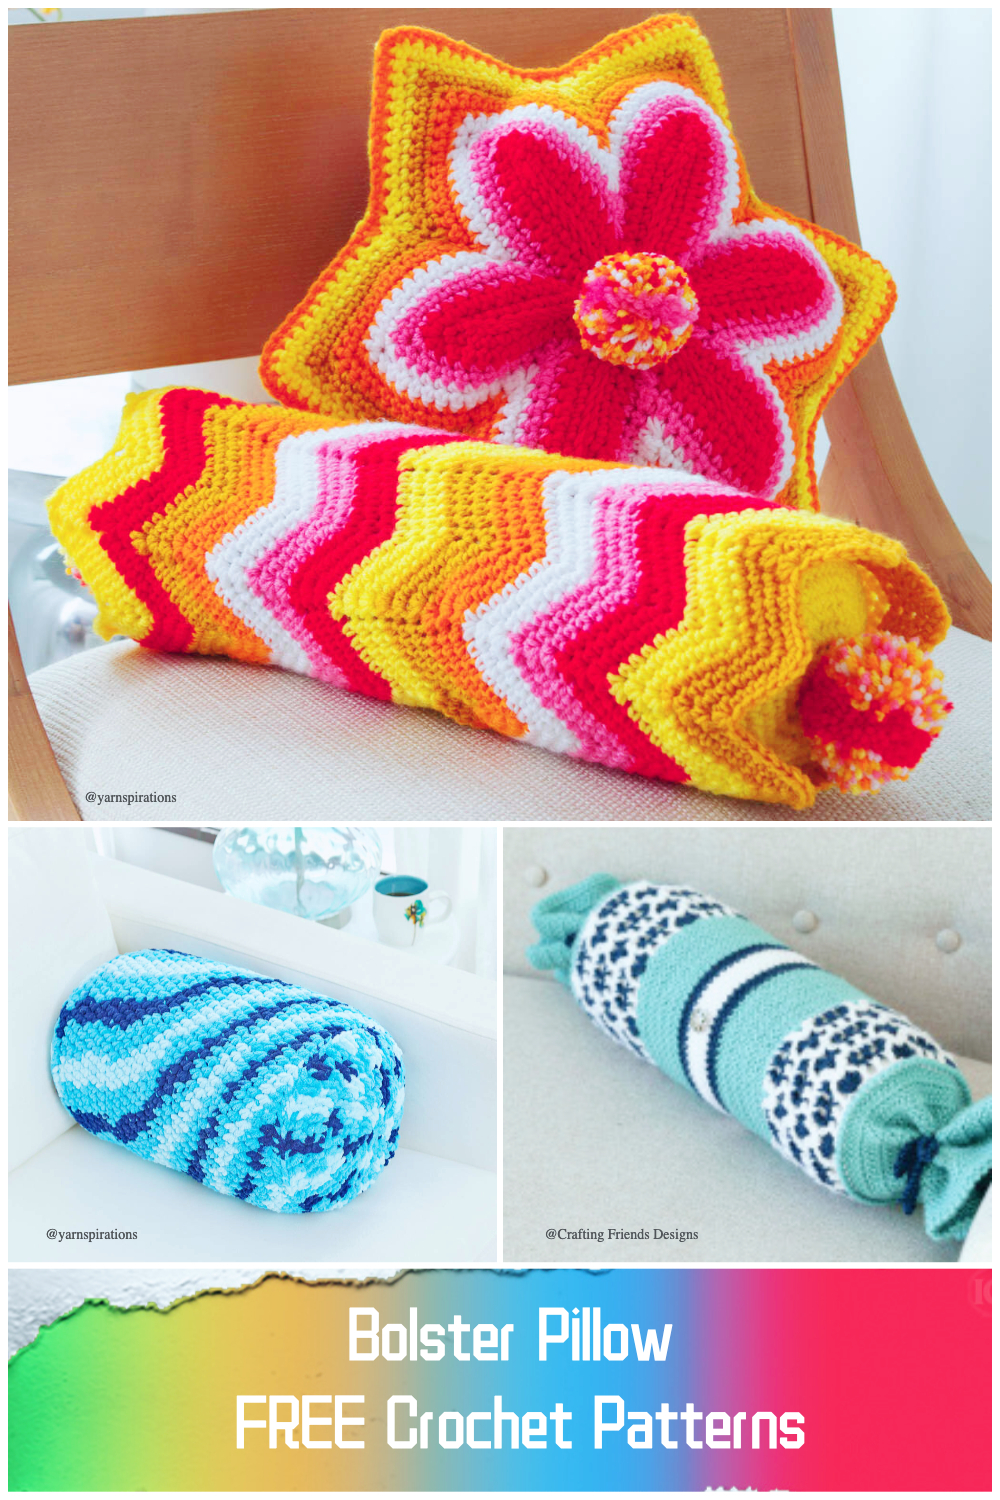  Bolster Pillow FREE Crochet Patterns